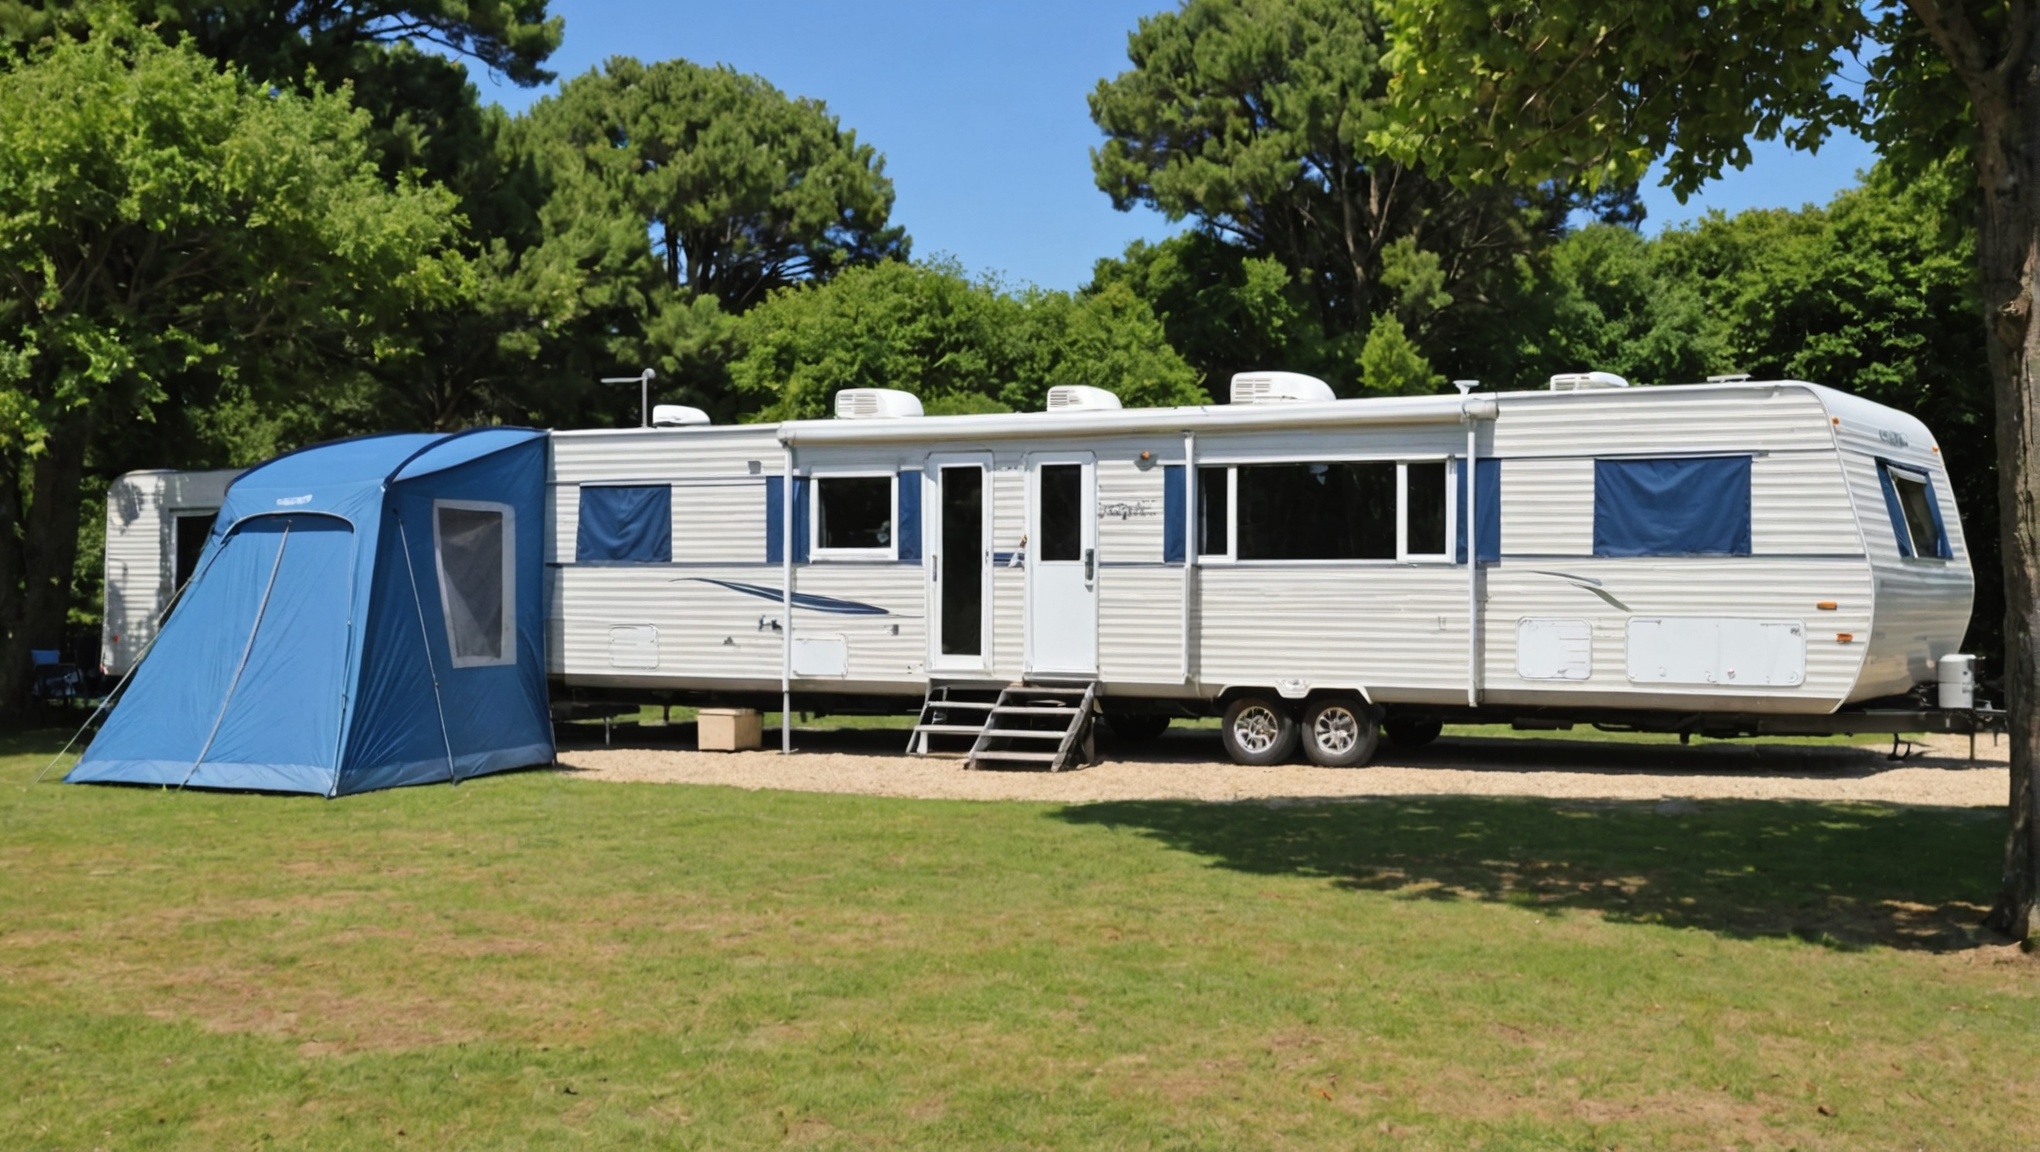 Choisir la Destination Idéale pour des Vacances en Camping avec Mobil-home à Royan: Conseils et Astuces